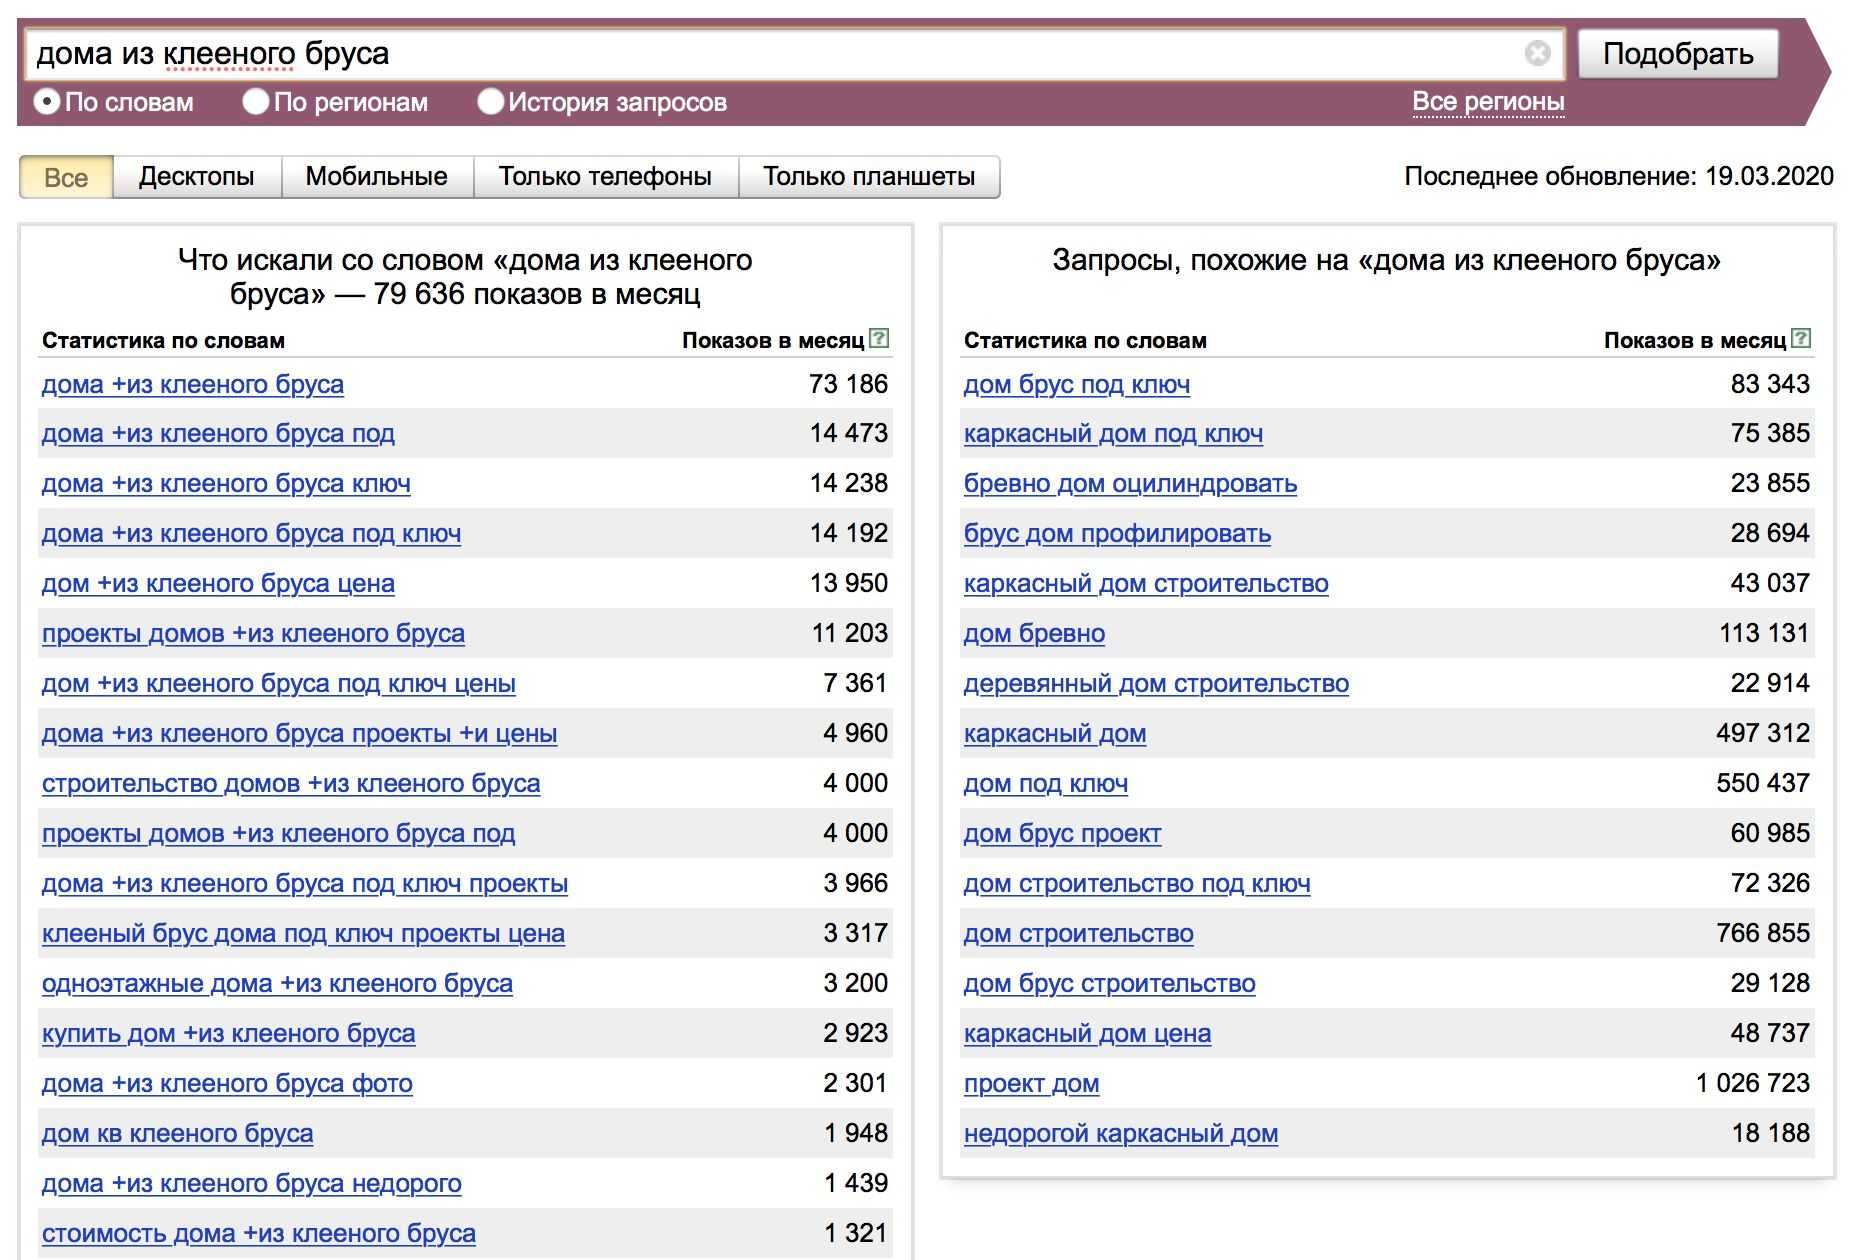 Популярные товары по запросу. Популярные запросы в Яндексе. Вордстат. Статистика запросов в интернете.